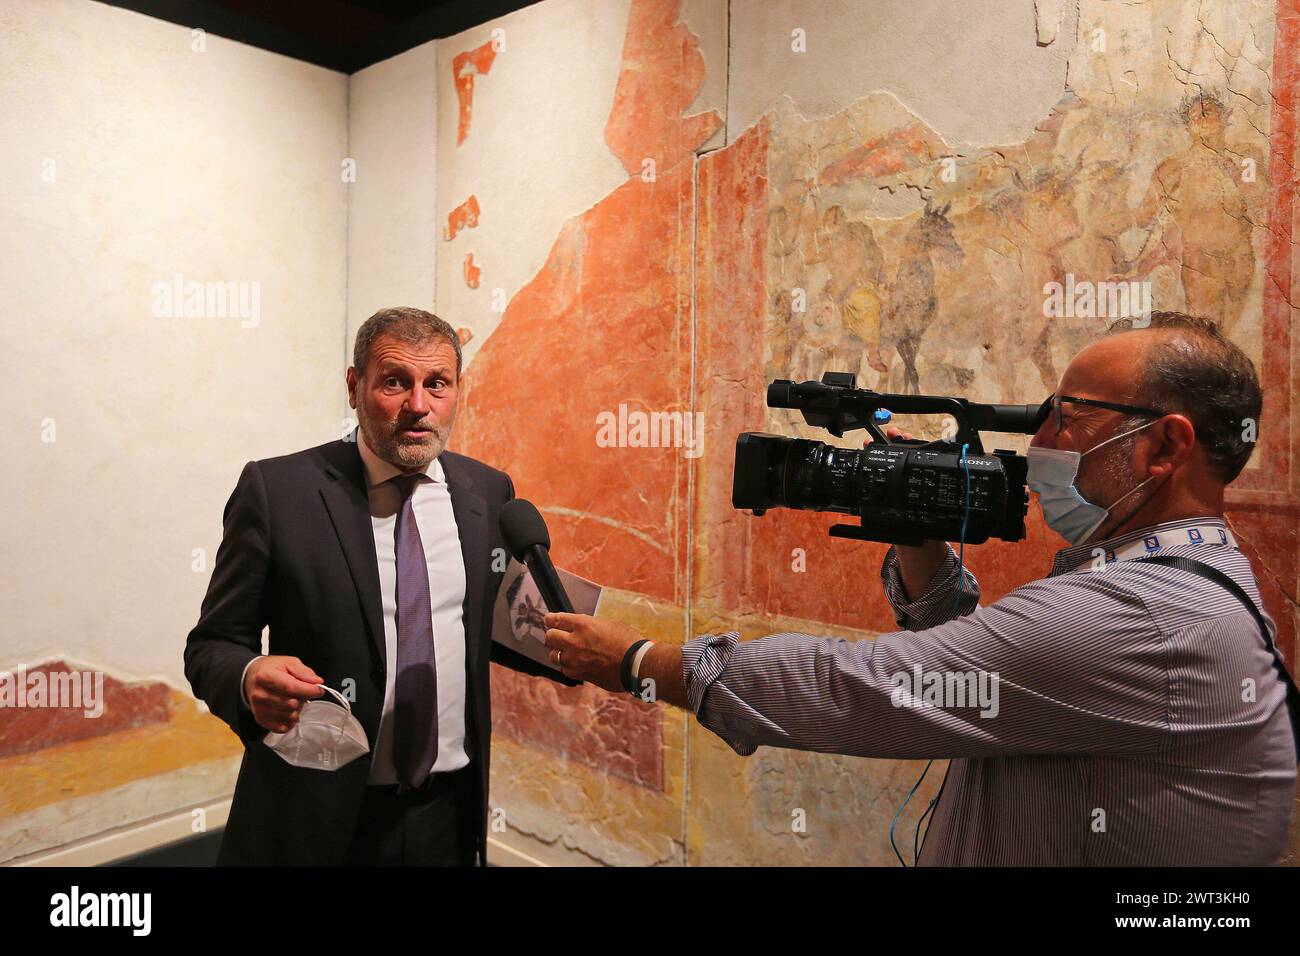 Le surintendant des fouilles de Pompéi, Massimo Osanna, parle à un journaliste de télévision, à l'intérieur du musée archéologique Libero D'Orsi, qui a ju Banque D'Images